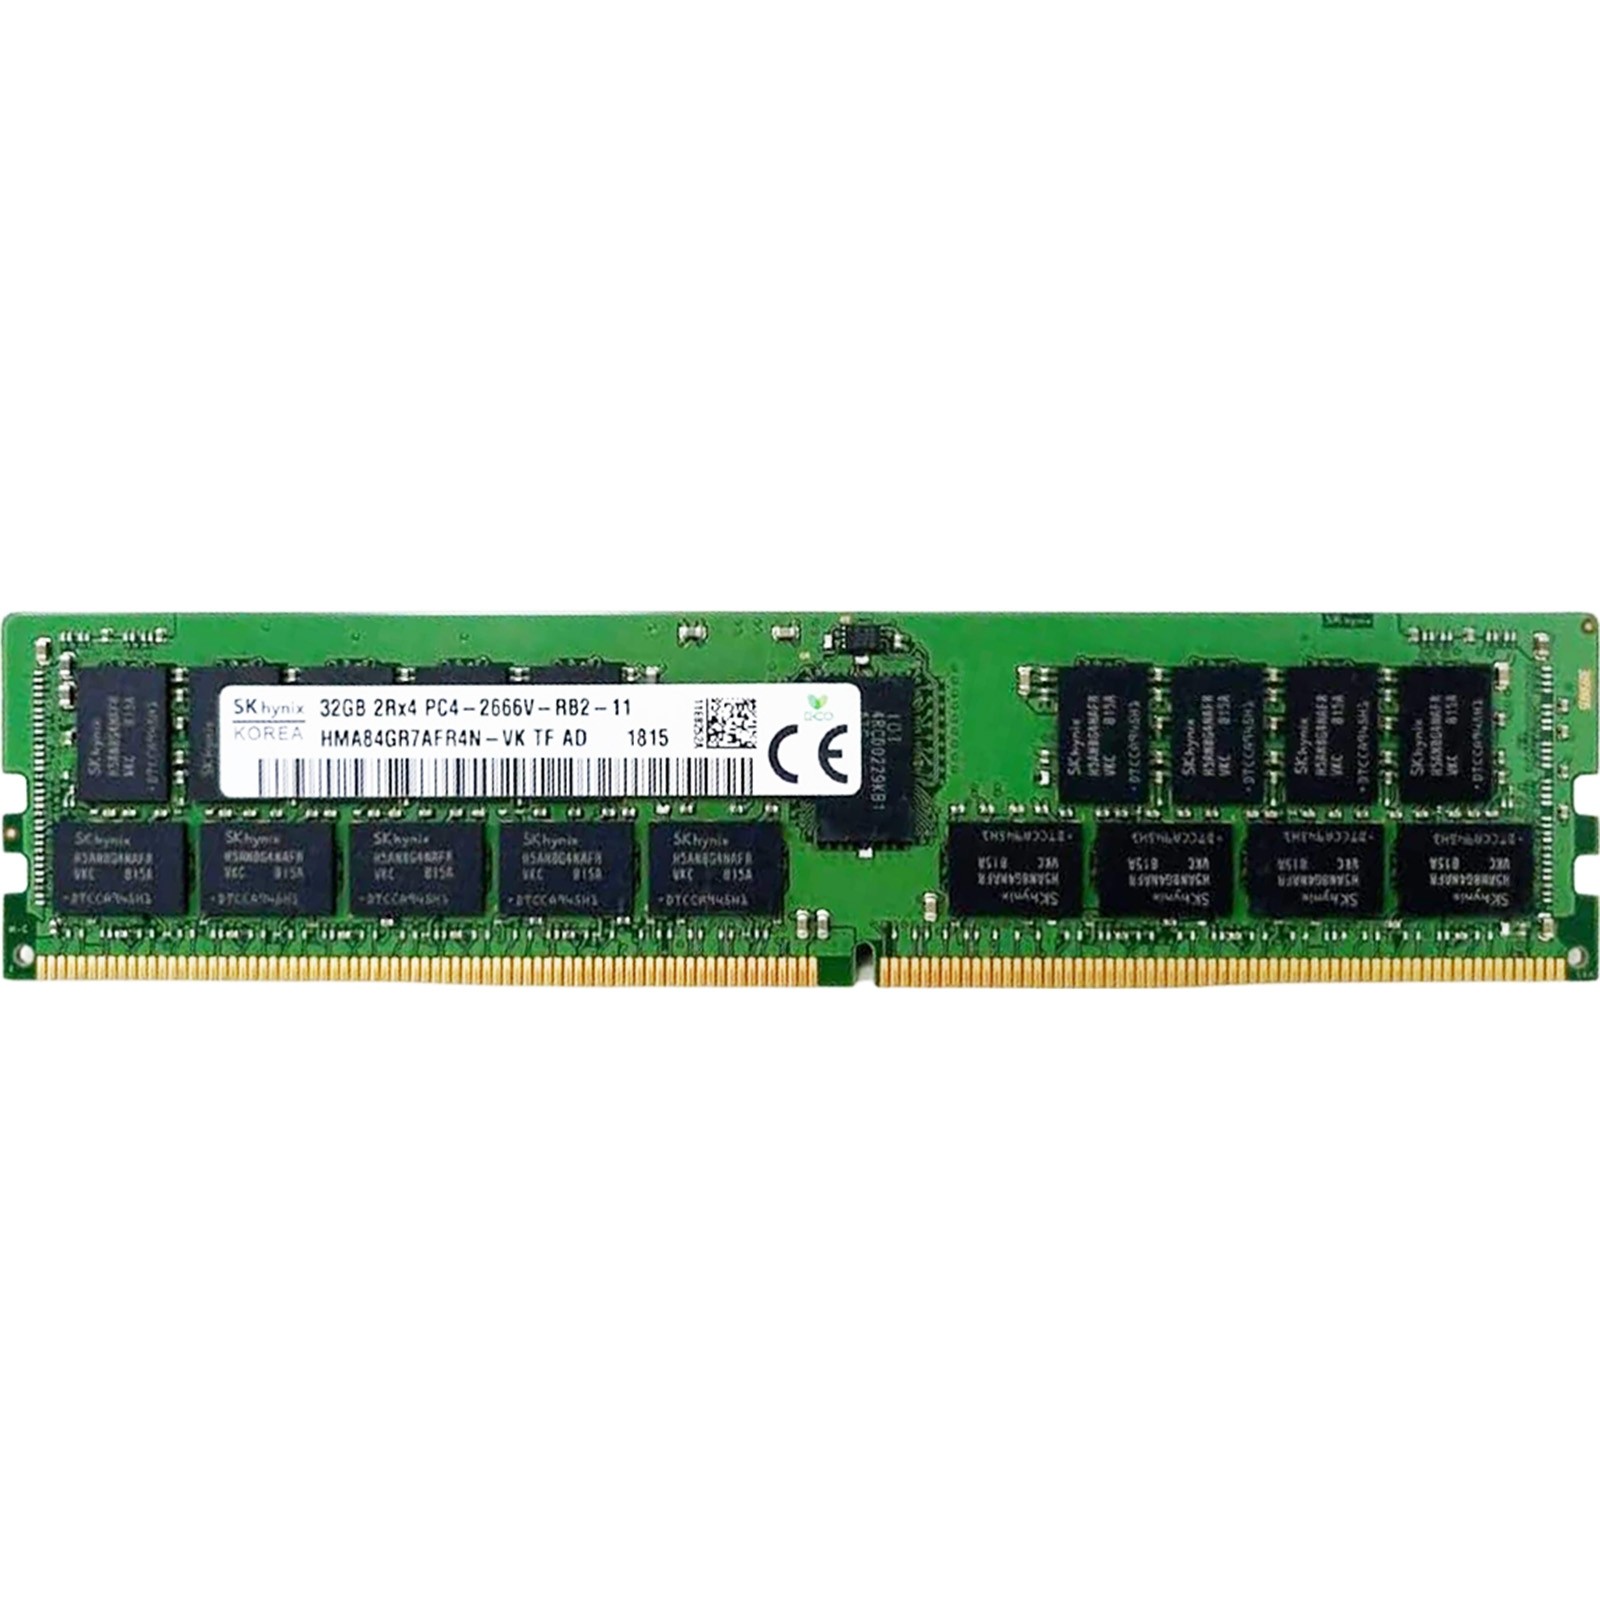 Hynix (HMA84GR7AFR4N-VK) - 32GB PC4-21300V-R (2RX4, DDR4-2666MHz) RAM